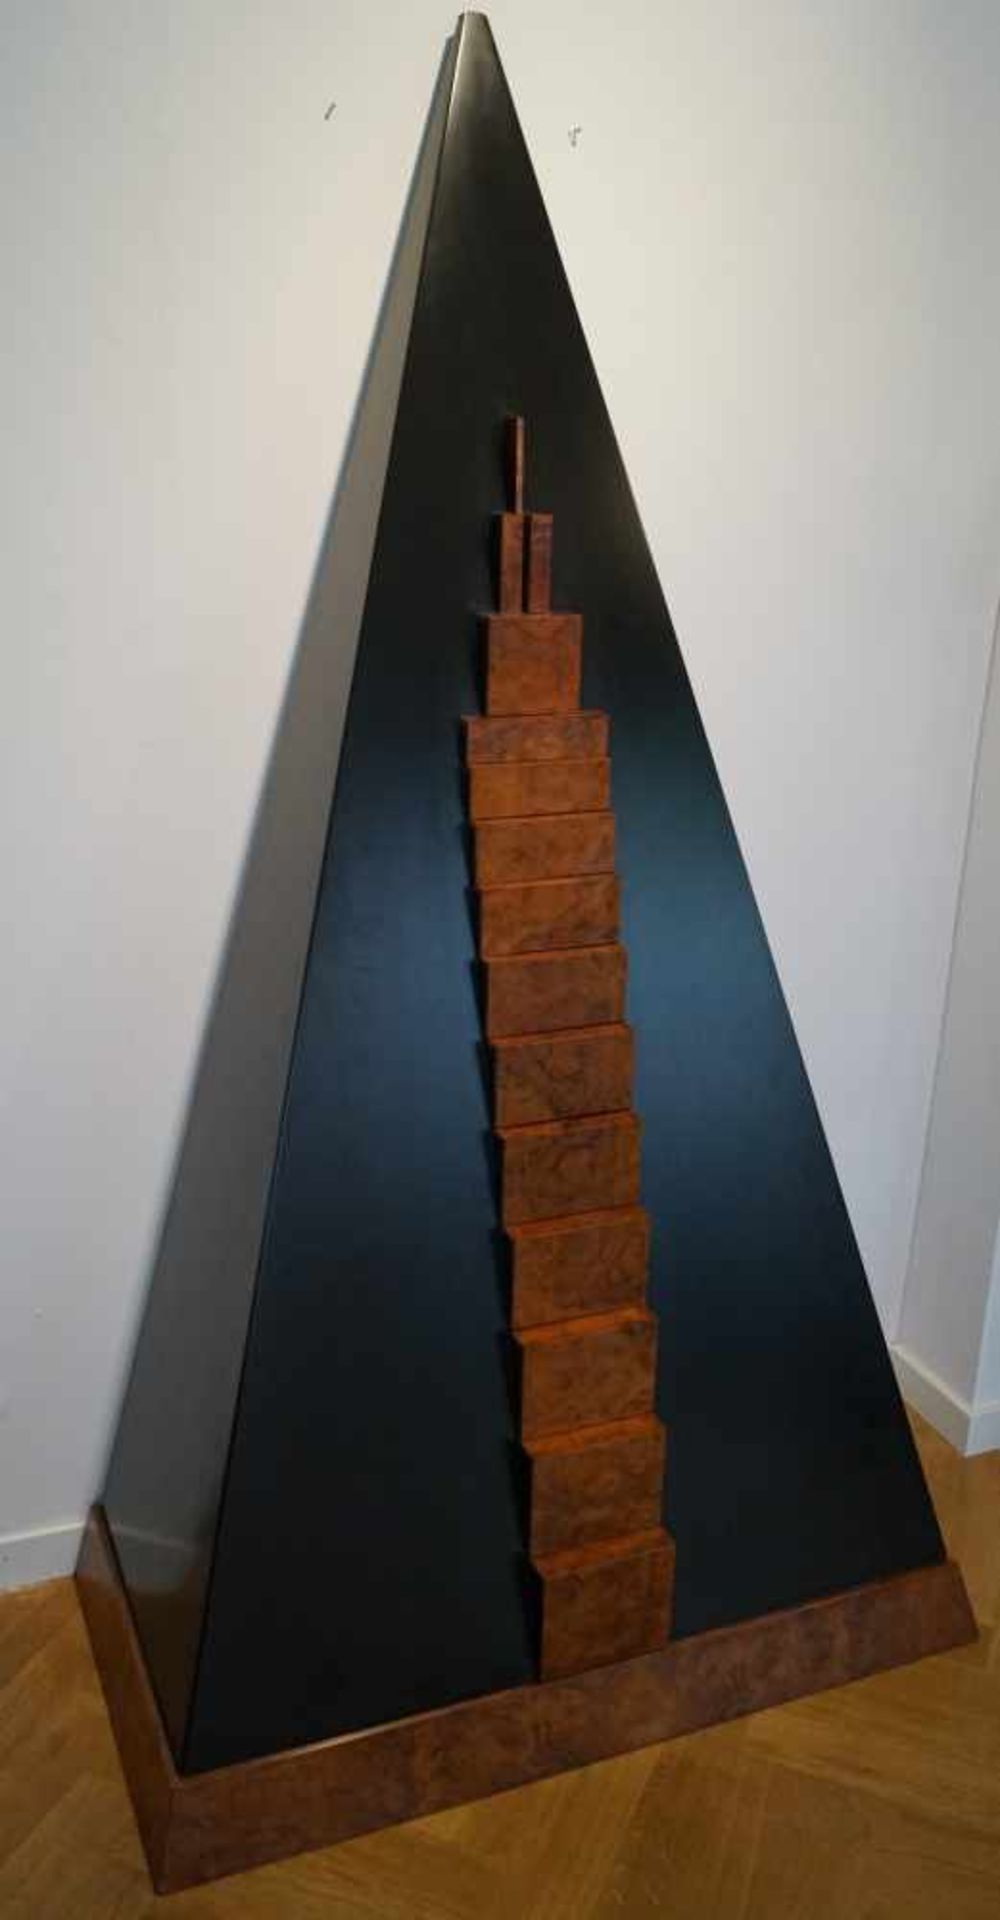 Pyramidenschrank, Andreas Weisheit (1937 - 2000) Pyramidenschrank, Thujawurzelholz und in